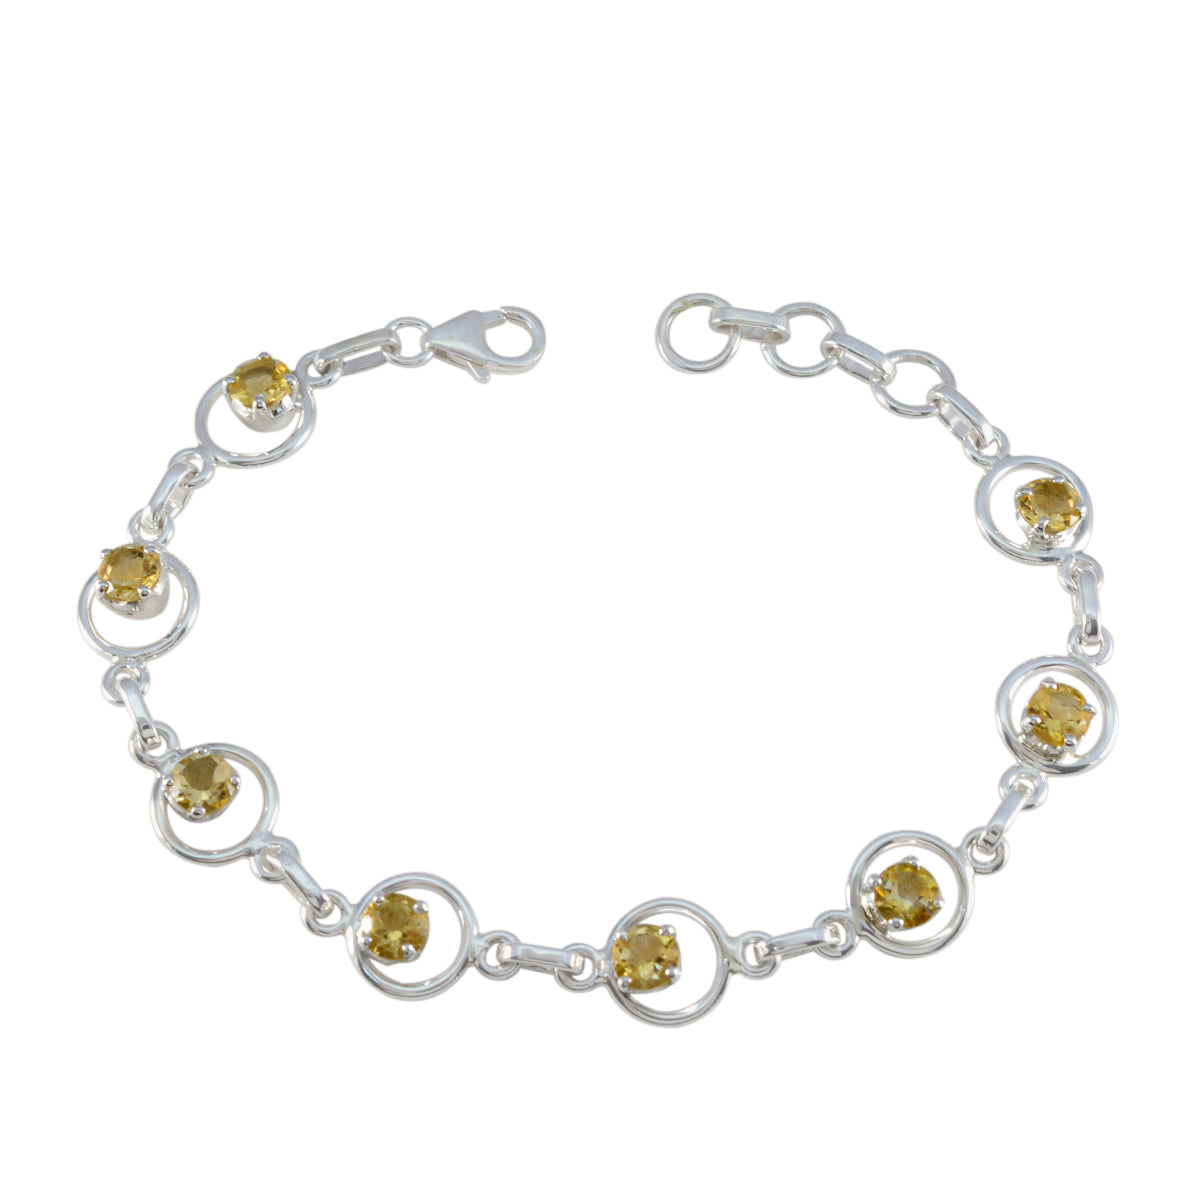 Riyo indien bracelet en argent sterling 925 pour femme bracelet citrine bracelet serti de griffes avec hameçon lien bracelet à breloques taille L 6-8,5 pouces.